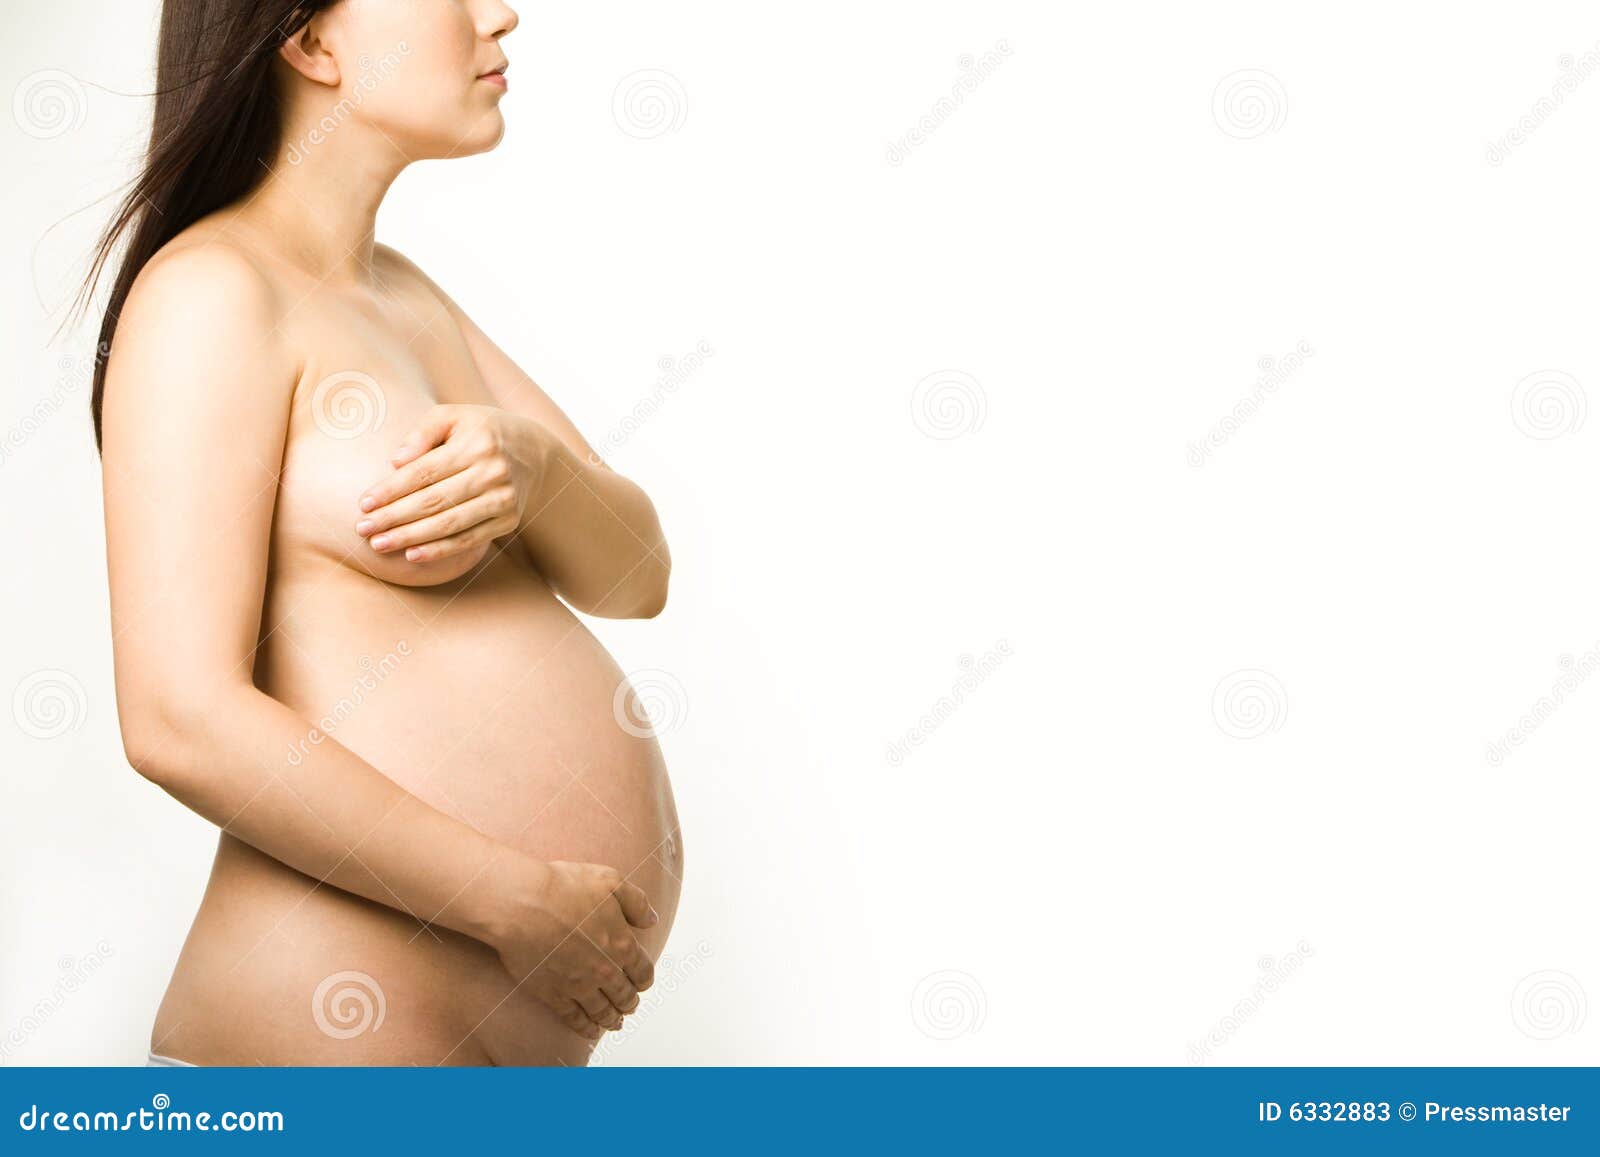 к чему видеть груди беременной фото 70